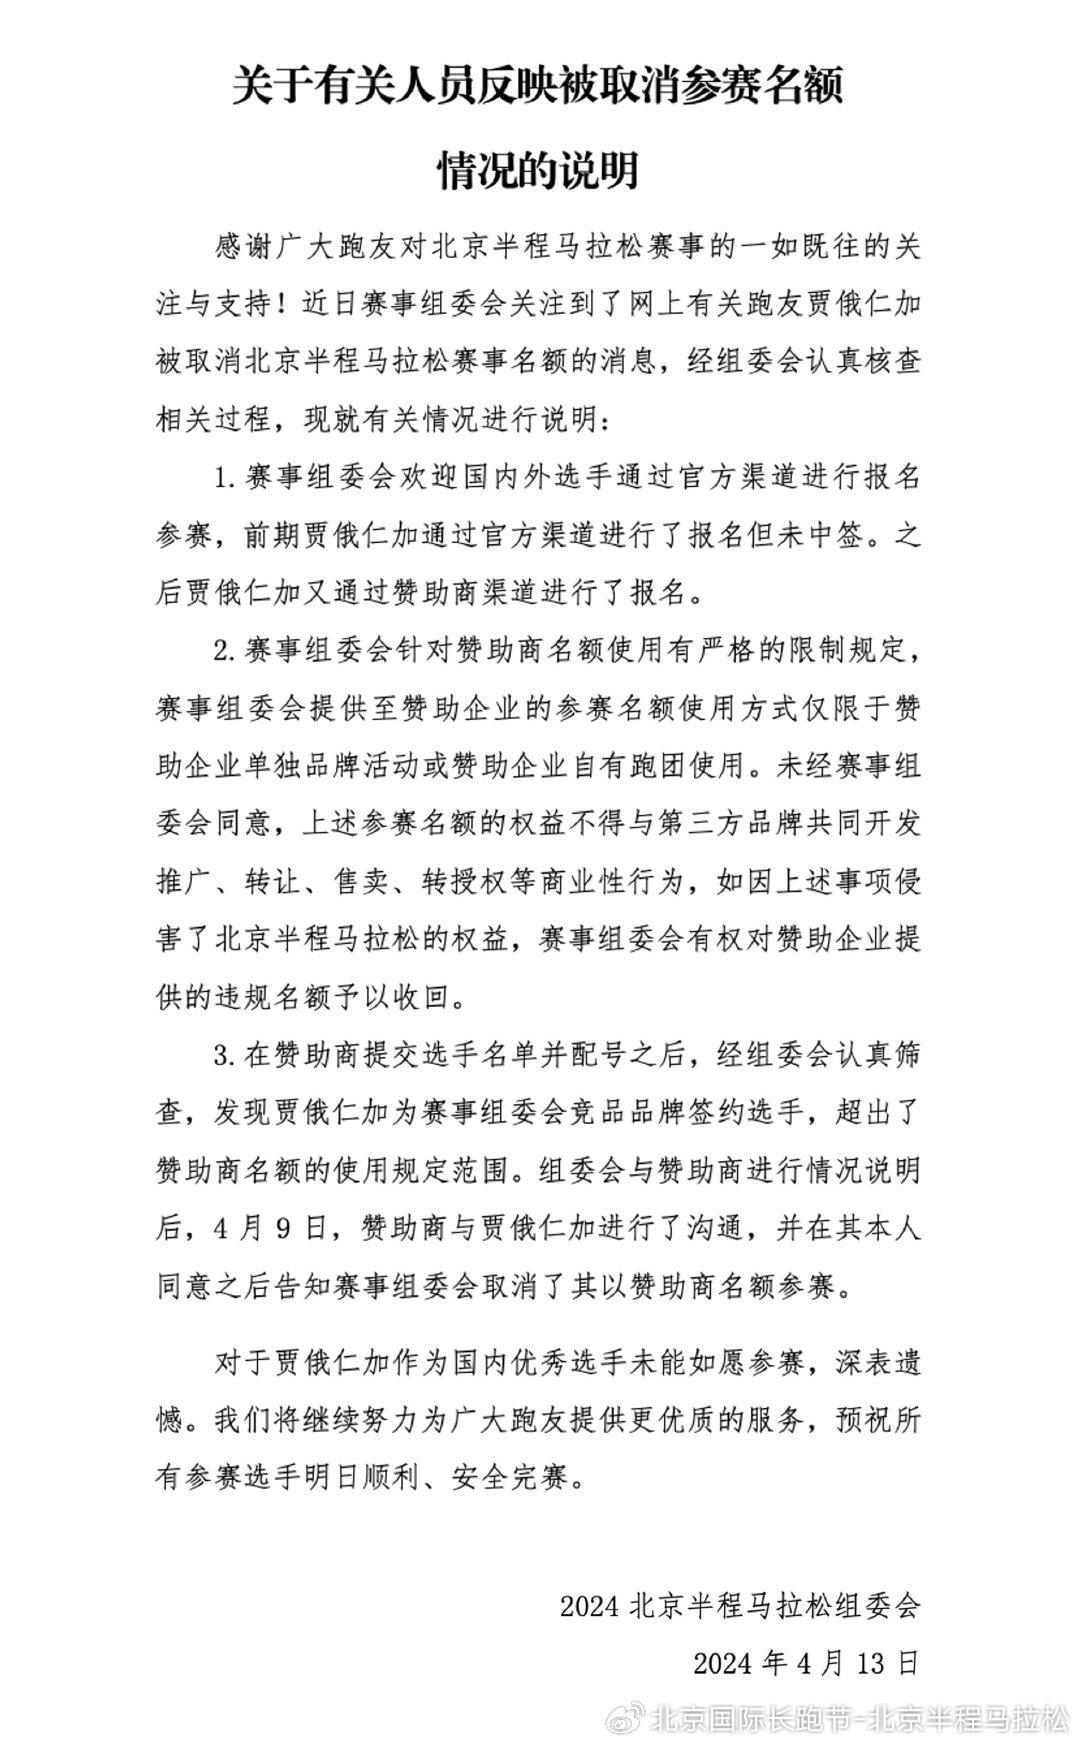 北京半马组委会发布声明。